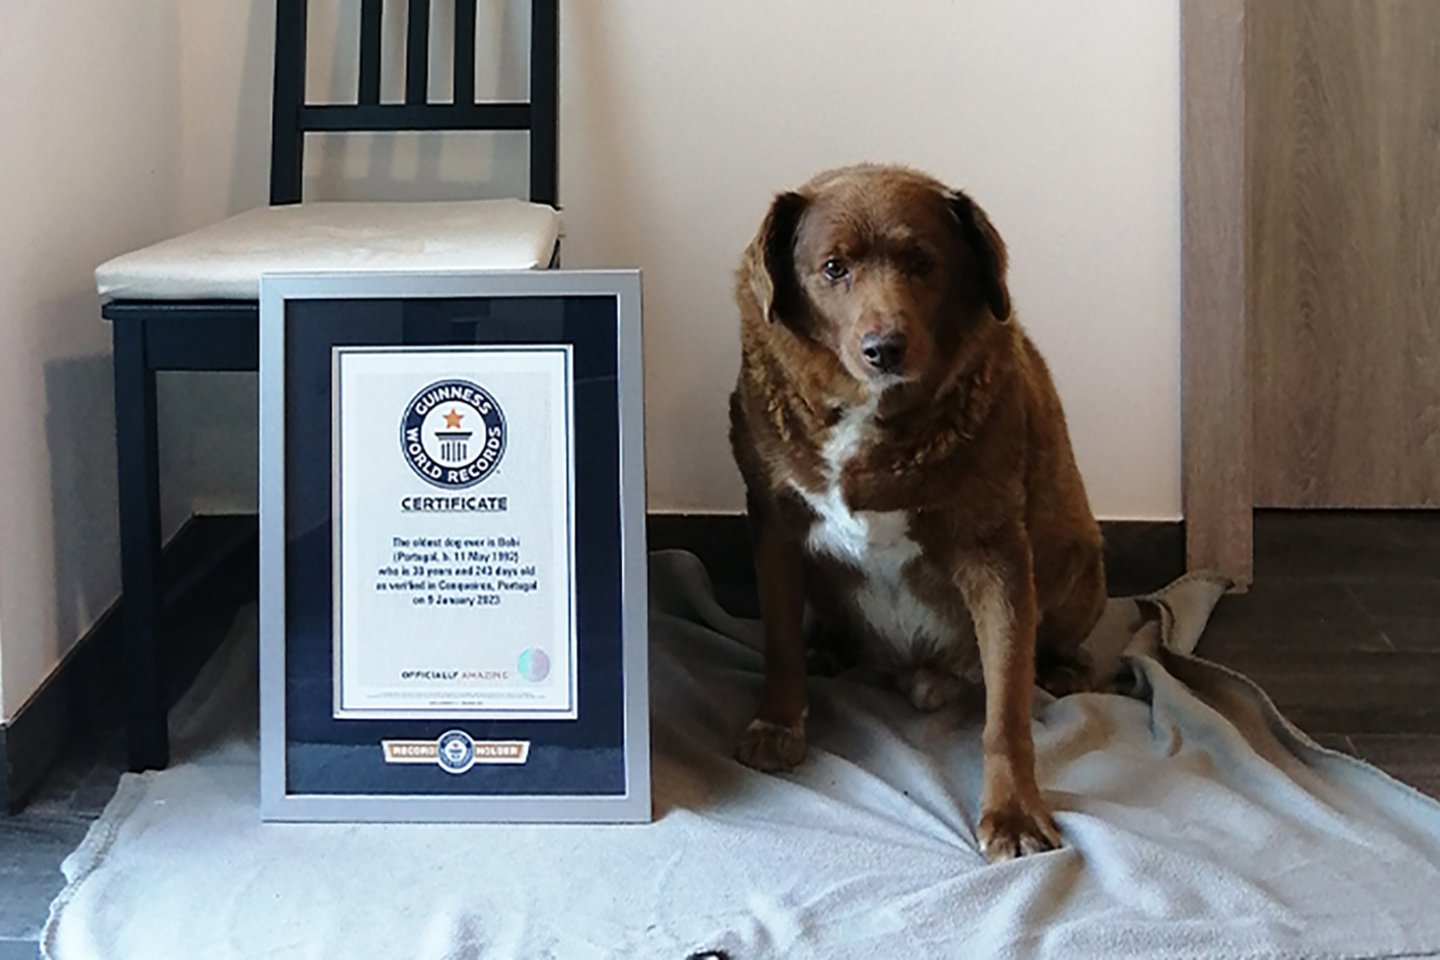 Guinnesso rekordų knygoje portugalų Alantėjos mastifas Bobis vasarį buvo pripažintas seniausiu visų laikų šunimi ir sumušė 1939 m. rekordą.<br>Guinnesso rekordų knygos nuotr.